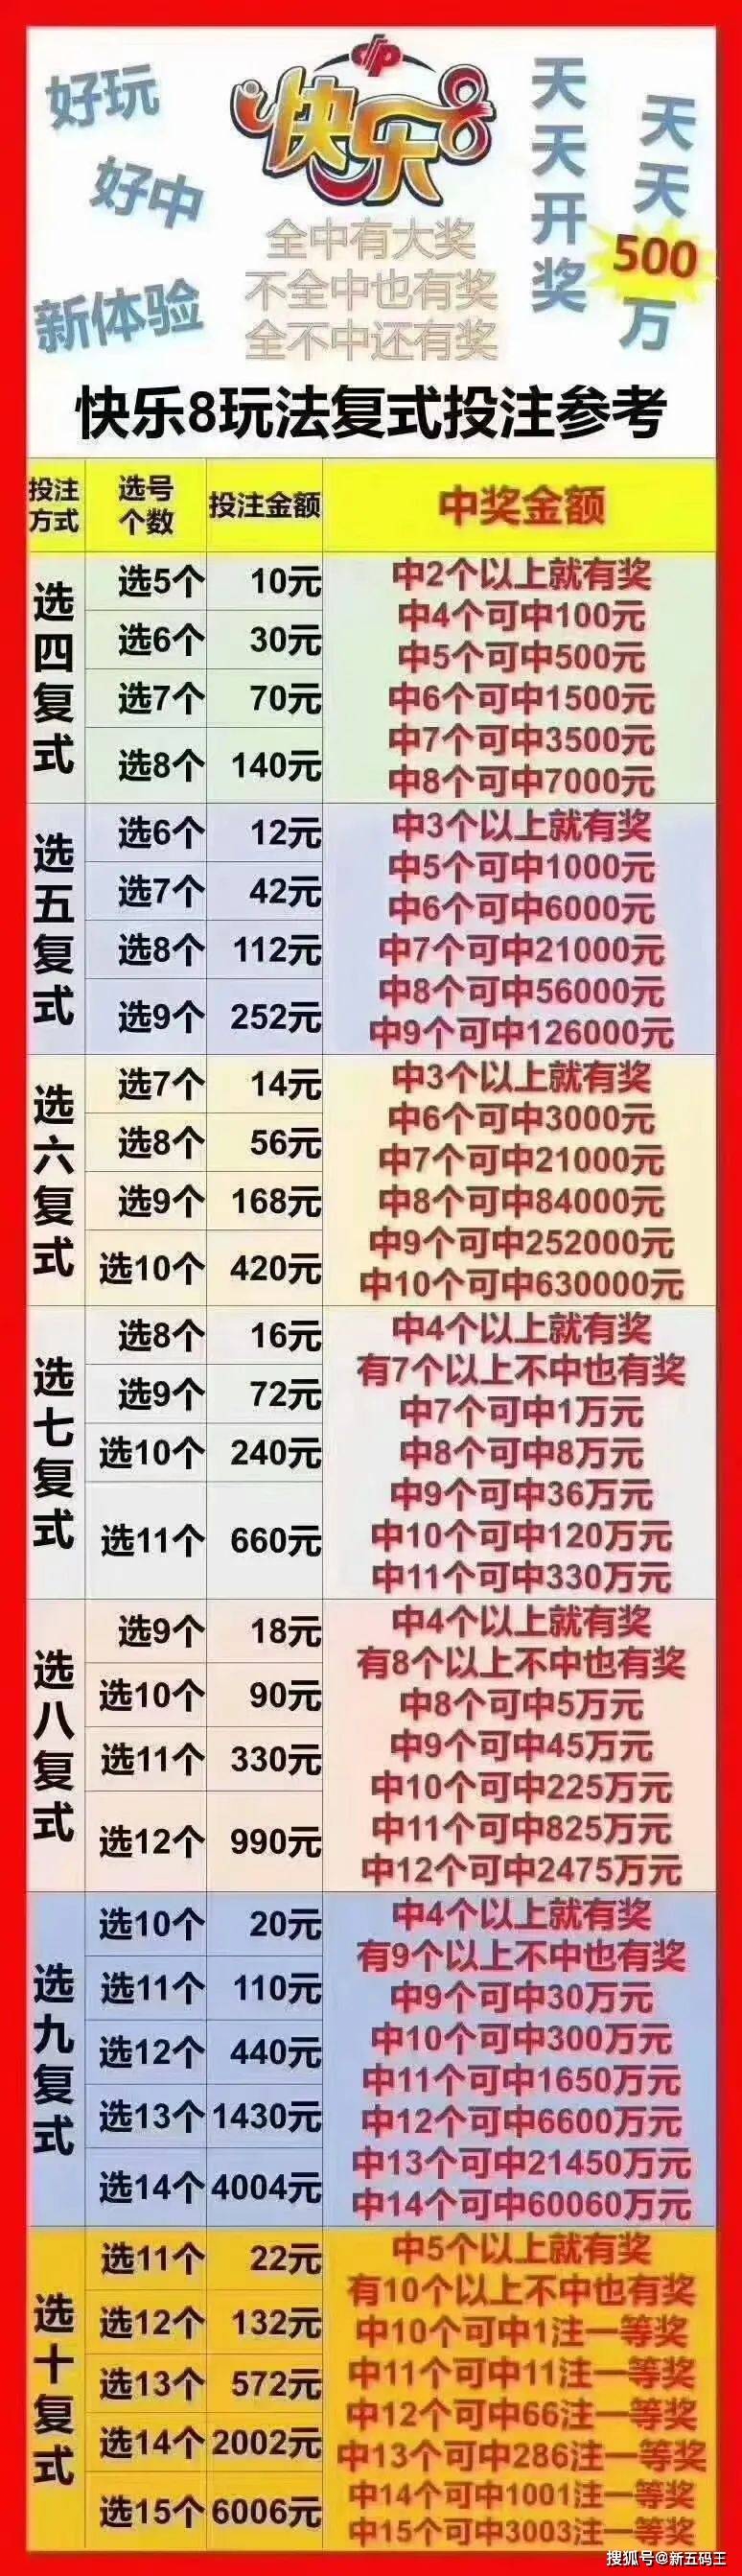 中国福利彩票"快乐8"游戏规则